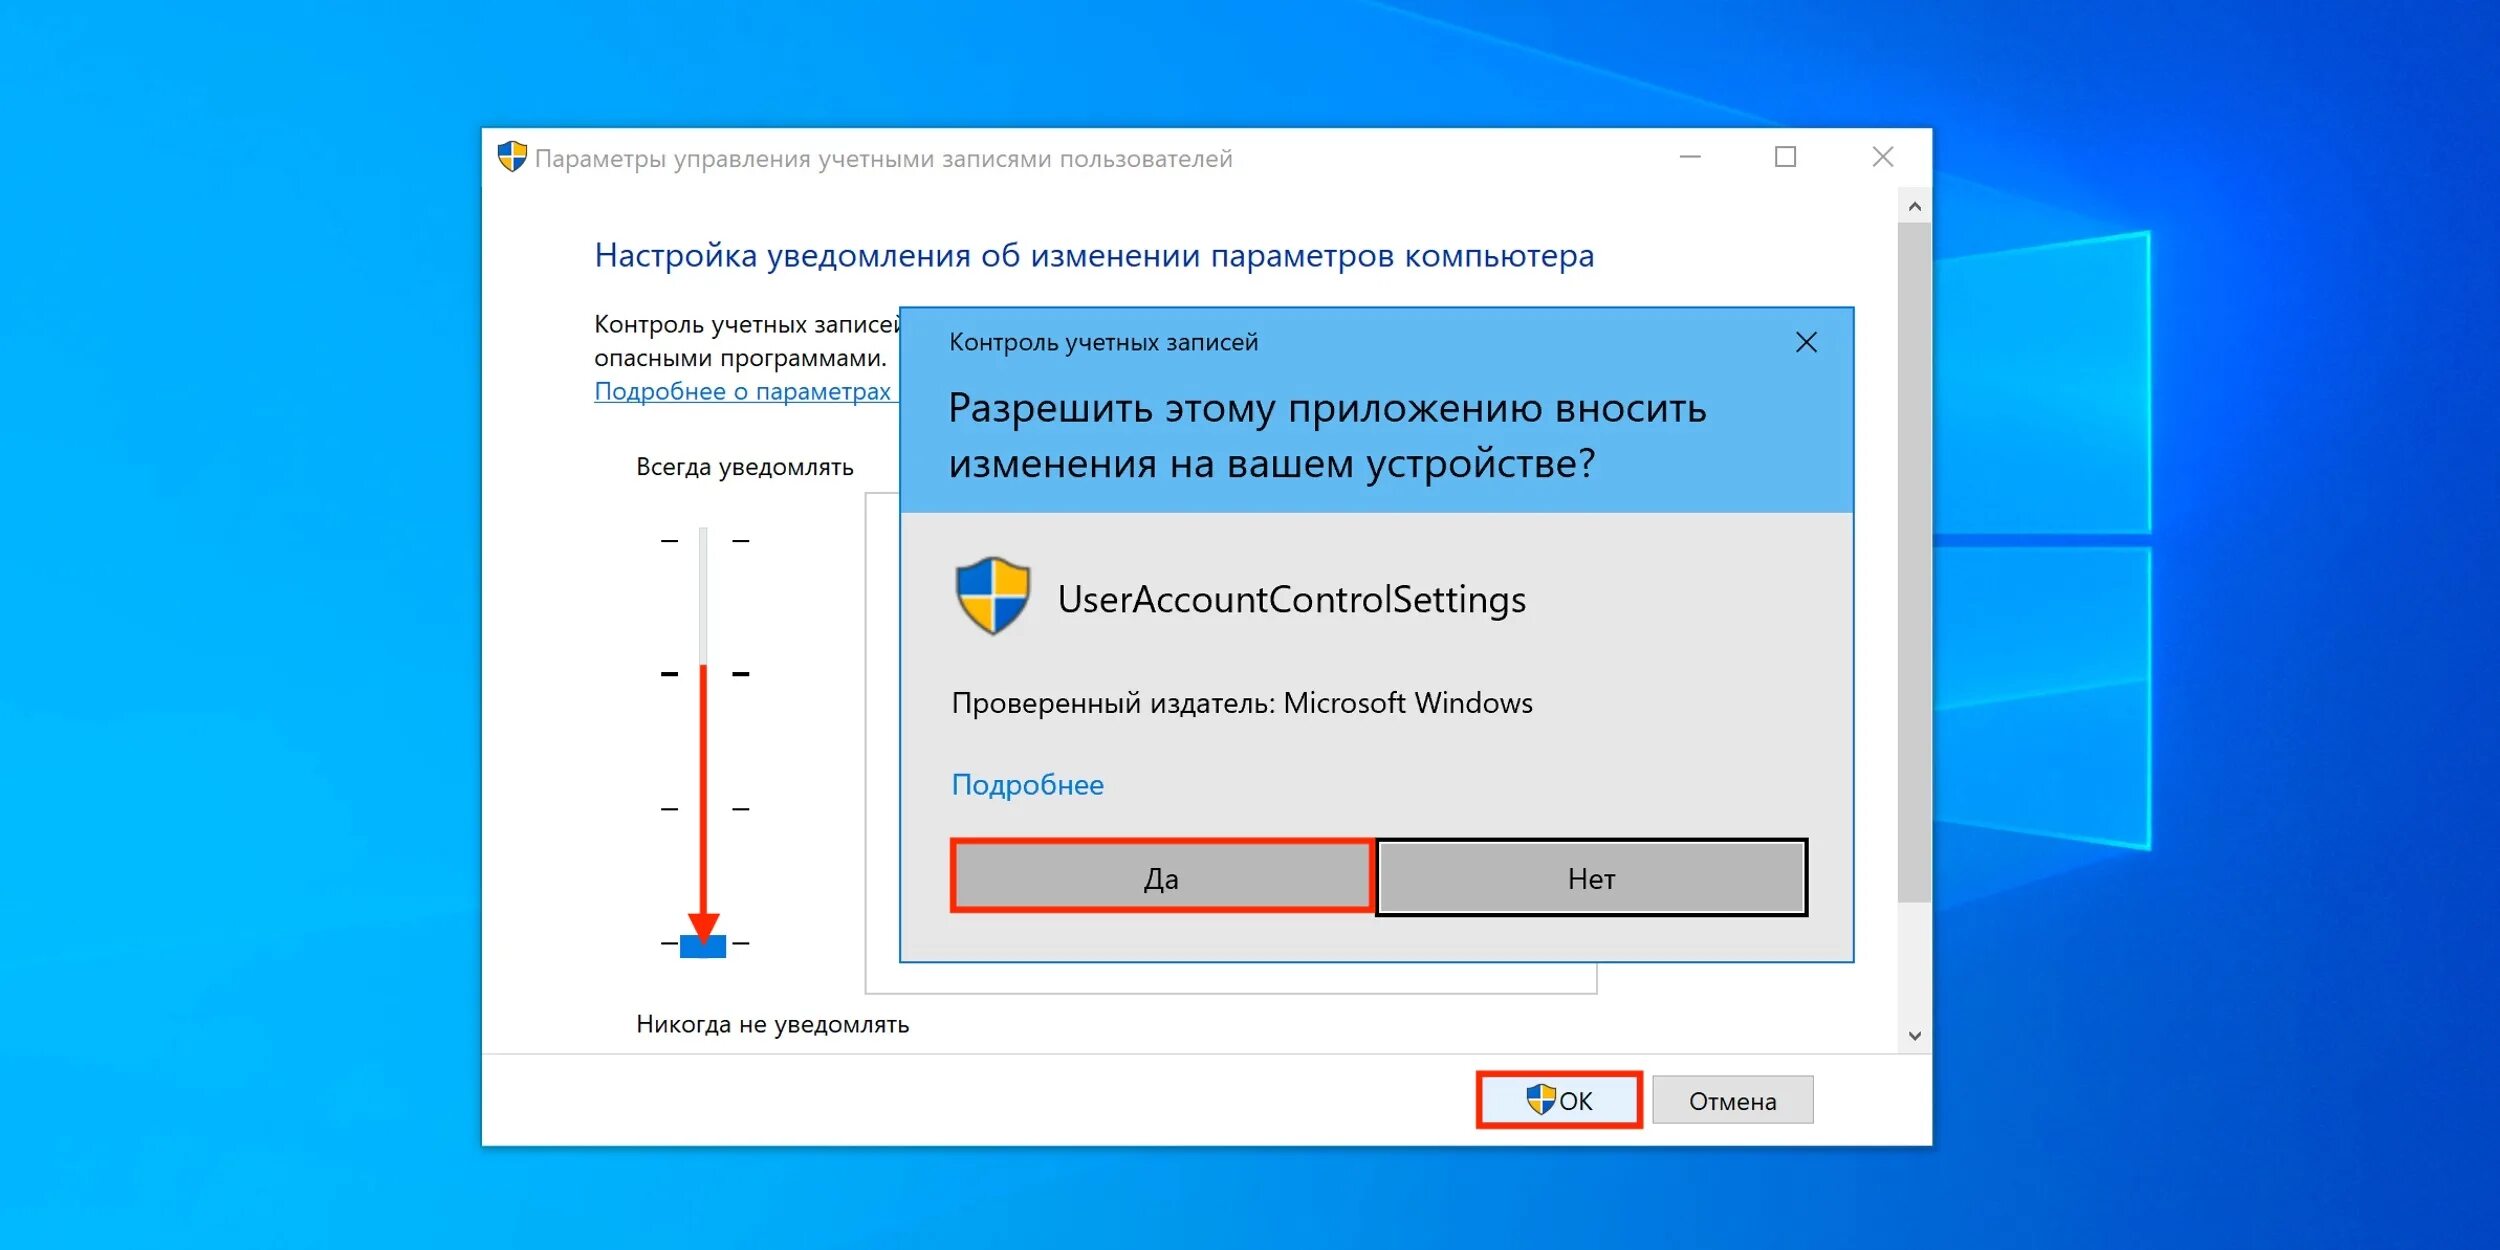 Деактивированный пользователь. Виндовс 10 параметры управления учетными записями пользователей. Контроль учетных записей. Контроль учётных записей пользователей. Контроль учетных записей Windows.